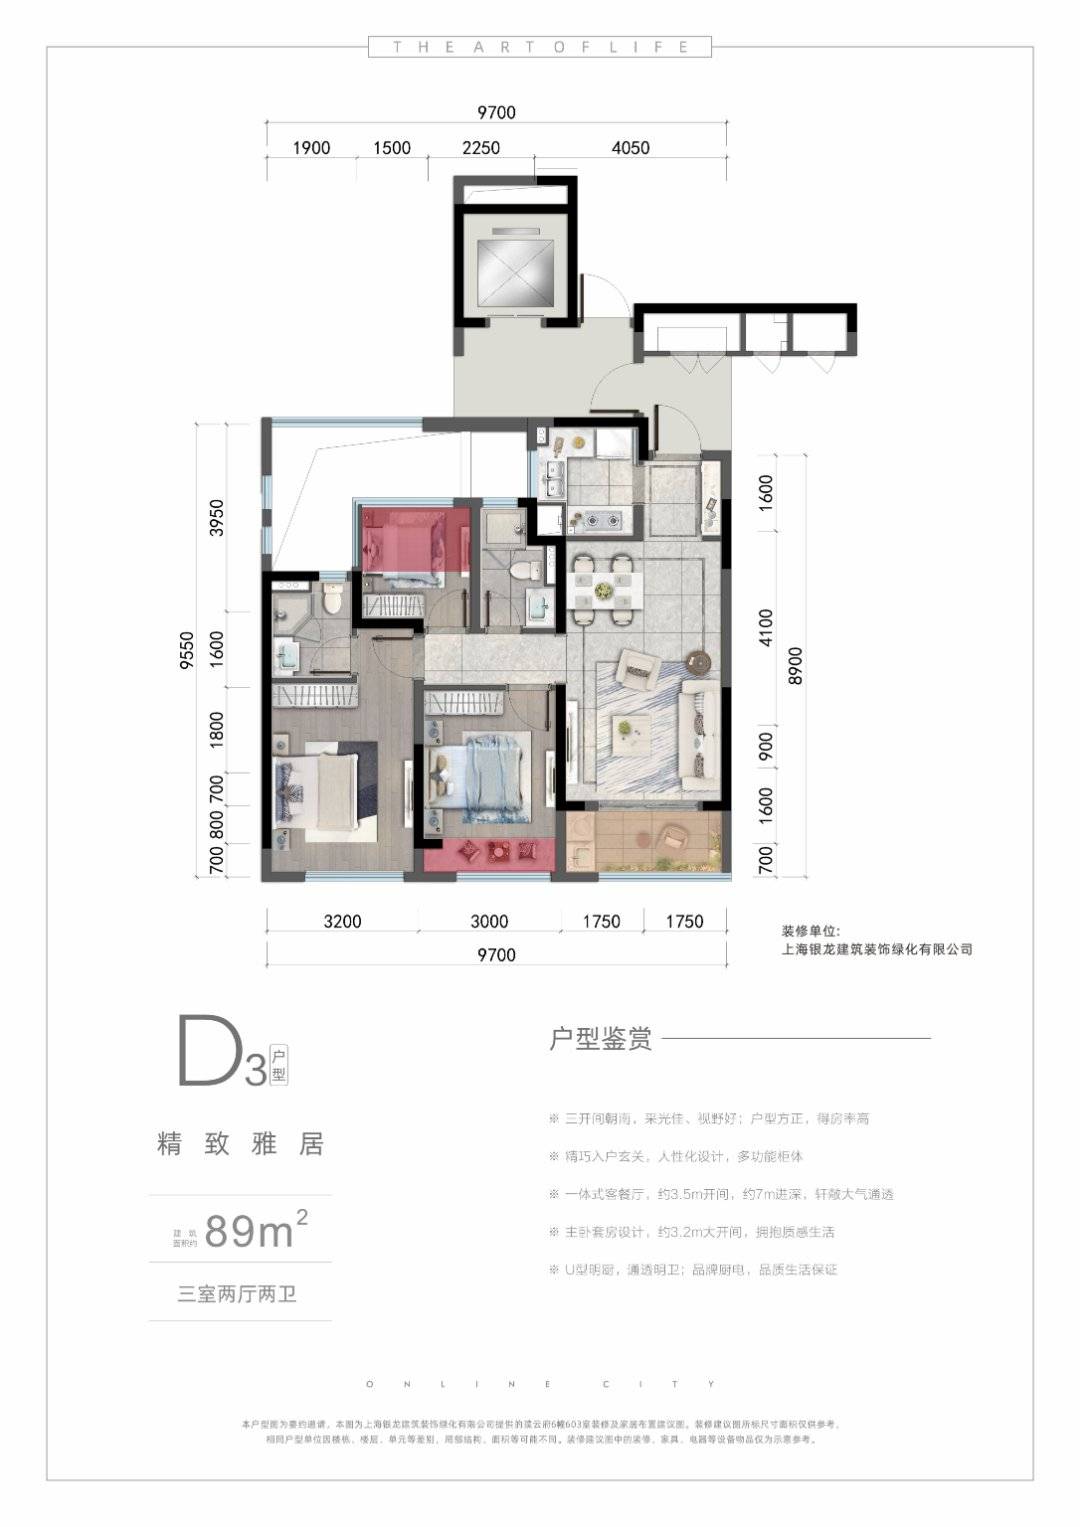 北京市东城区 丽景24号3室2厅2卫 135m²-地中海风格设计效果图-设计师李林林 - 设计头条 - 每平每屋·设计家